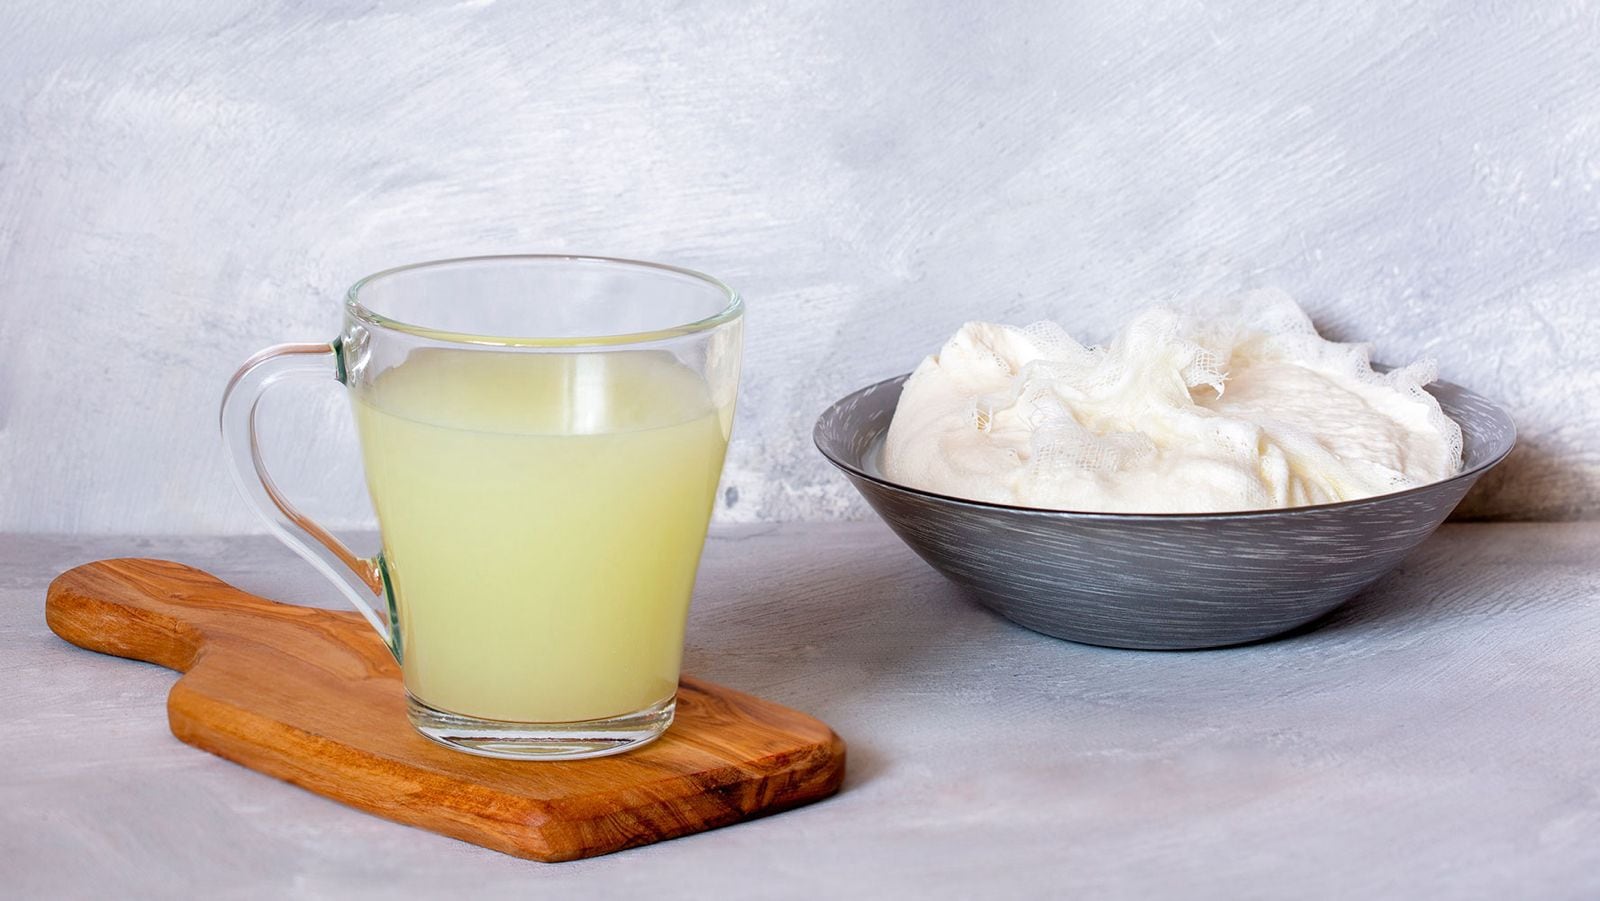 El suero de leche contiene los aminoácidos esenciales que el cuerpo necesita para un estado óptimo de salud. (Shutterstock)